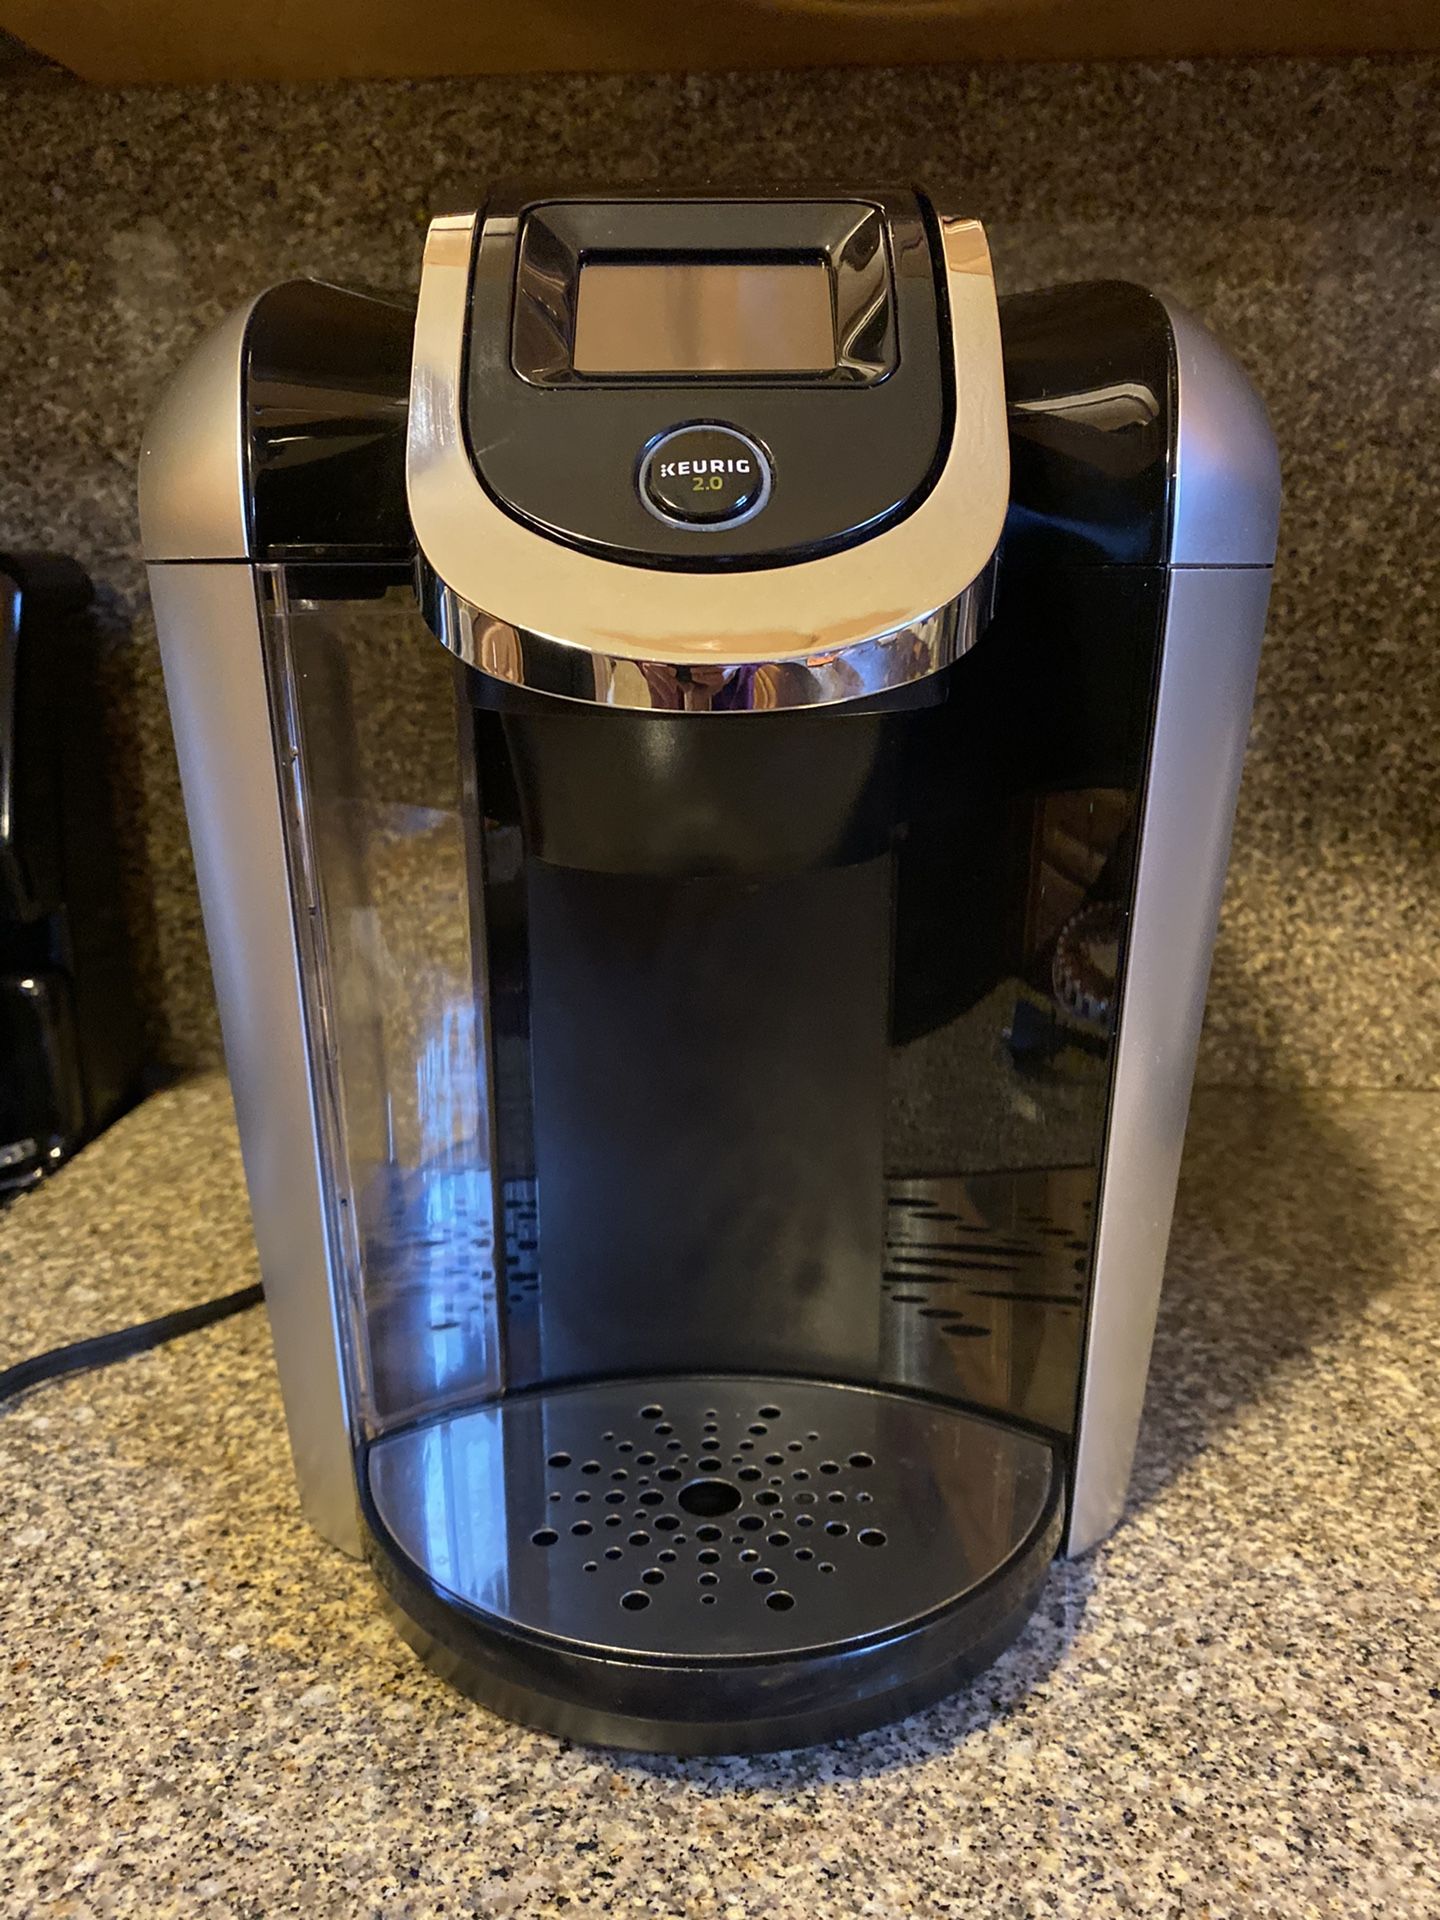 KEURIG 2.0 coffee maker like new